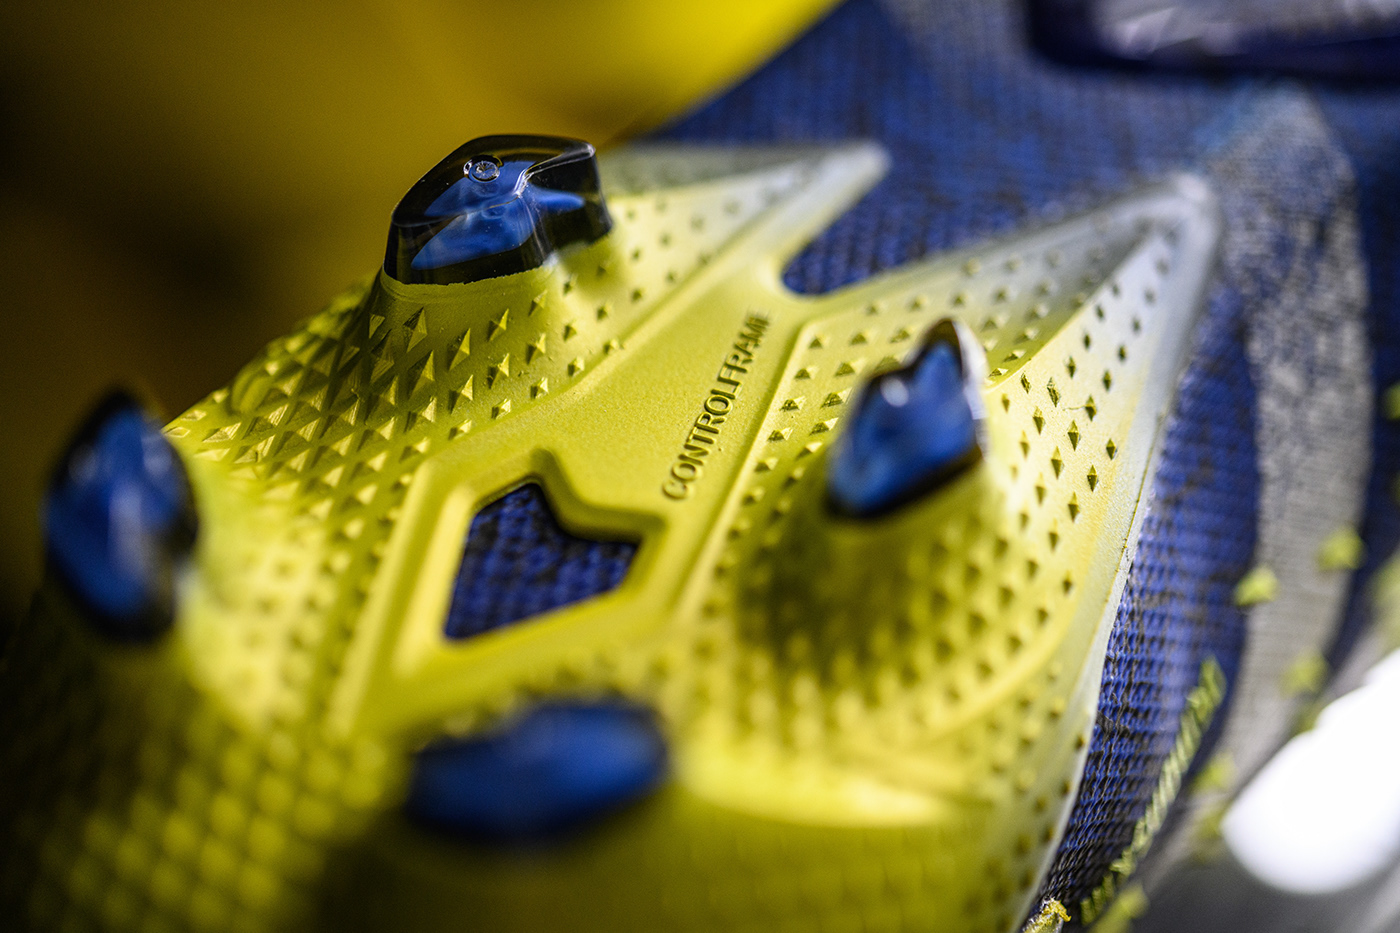 adidas Fashion  fashion design football footwear design industrial design  predator freak product design  soccer